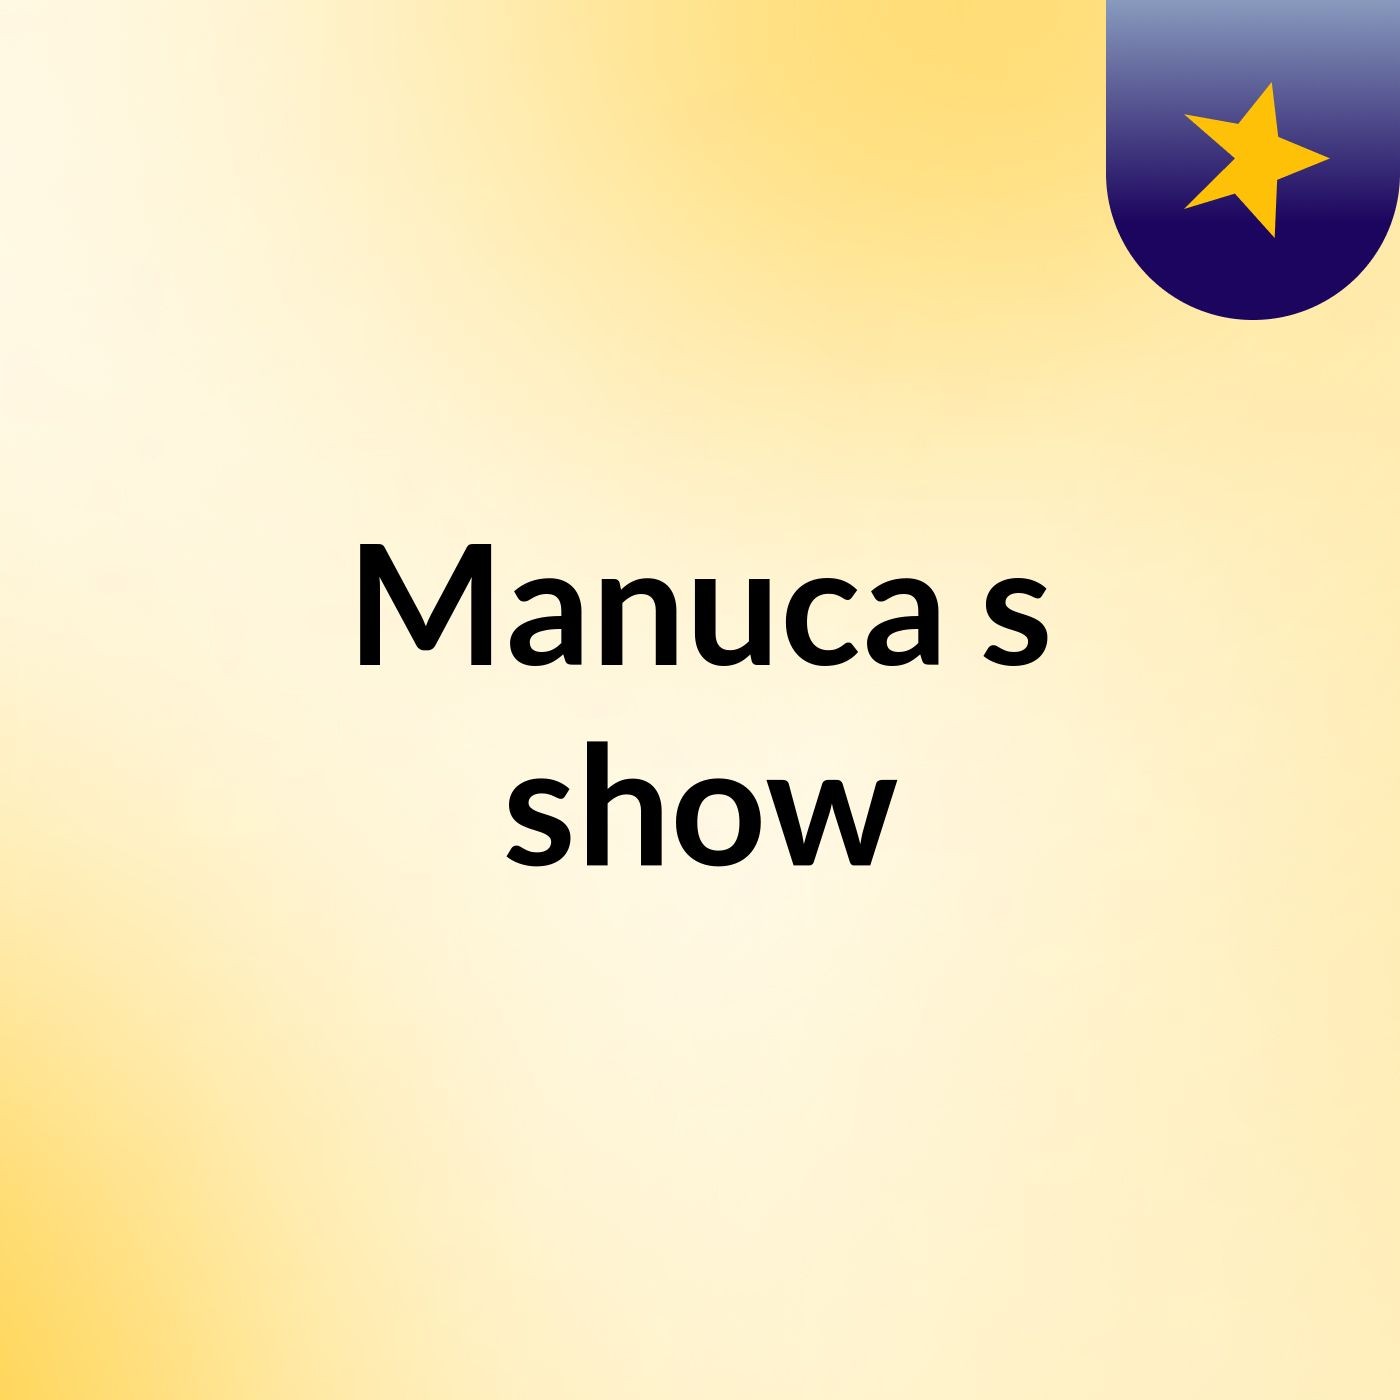 Manuca's show